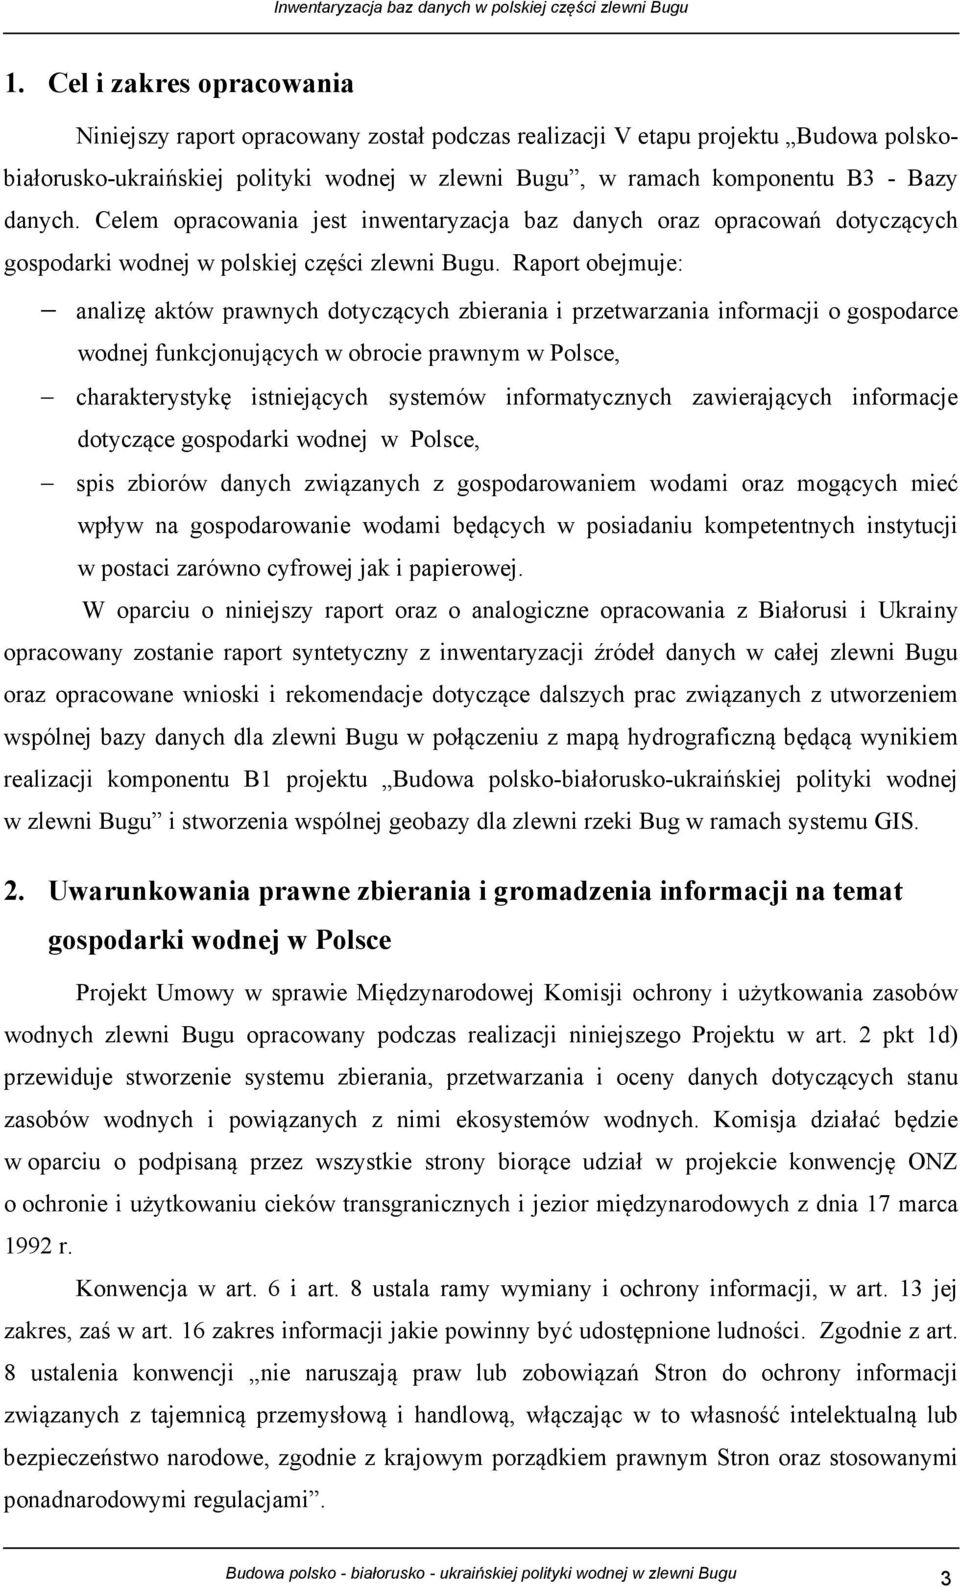 Raport obejmuje: analizę aktów prawnych dotyczących zbierania i przetwarzania informacji o gospodarce wodnej funkcjonujących w obrocie prawnym w Polsce, charakterystykę istniejących systemów